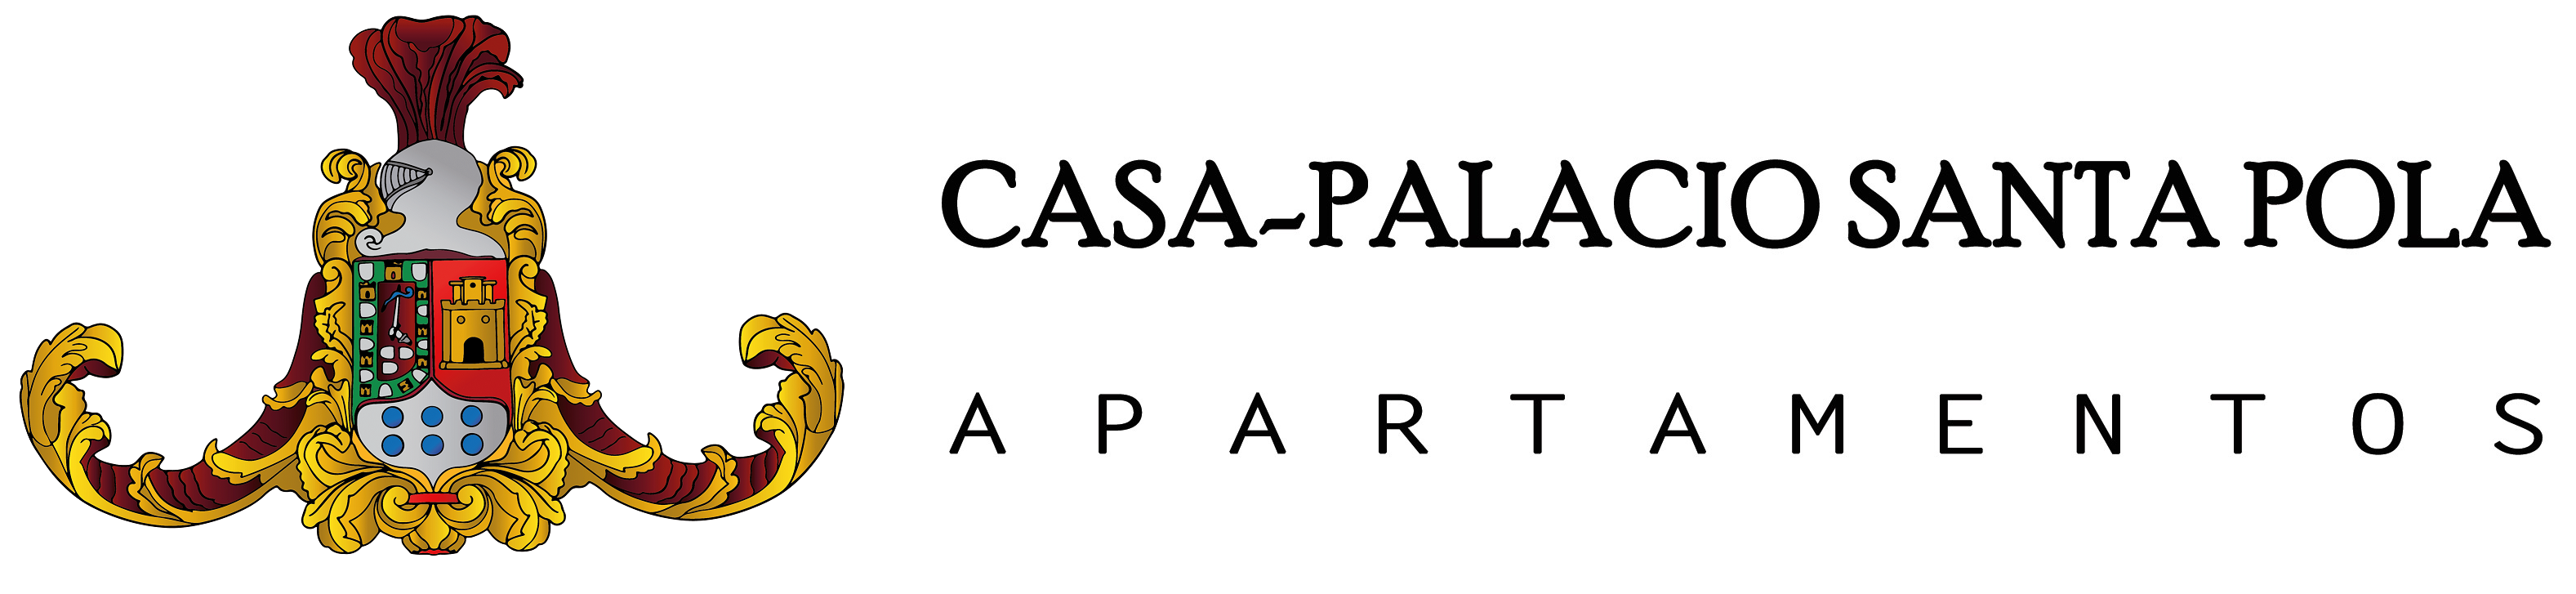 Casa-Palacio Santa Pola